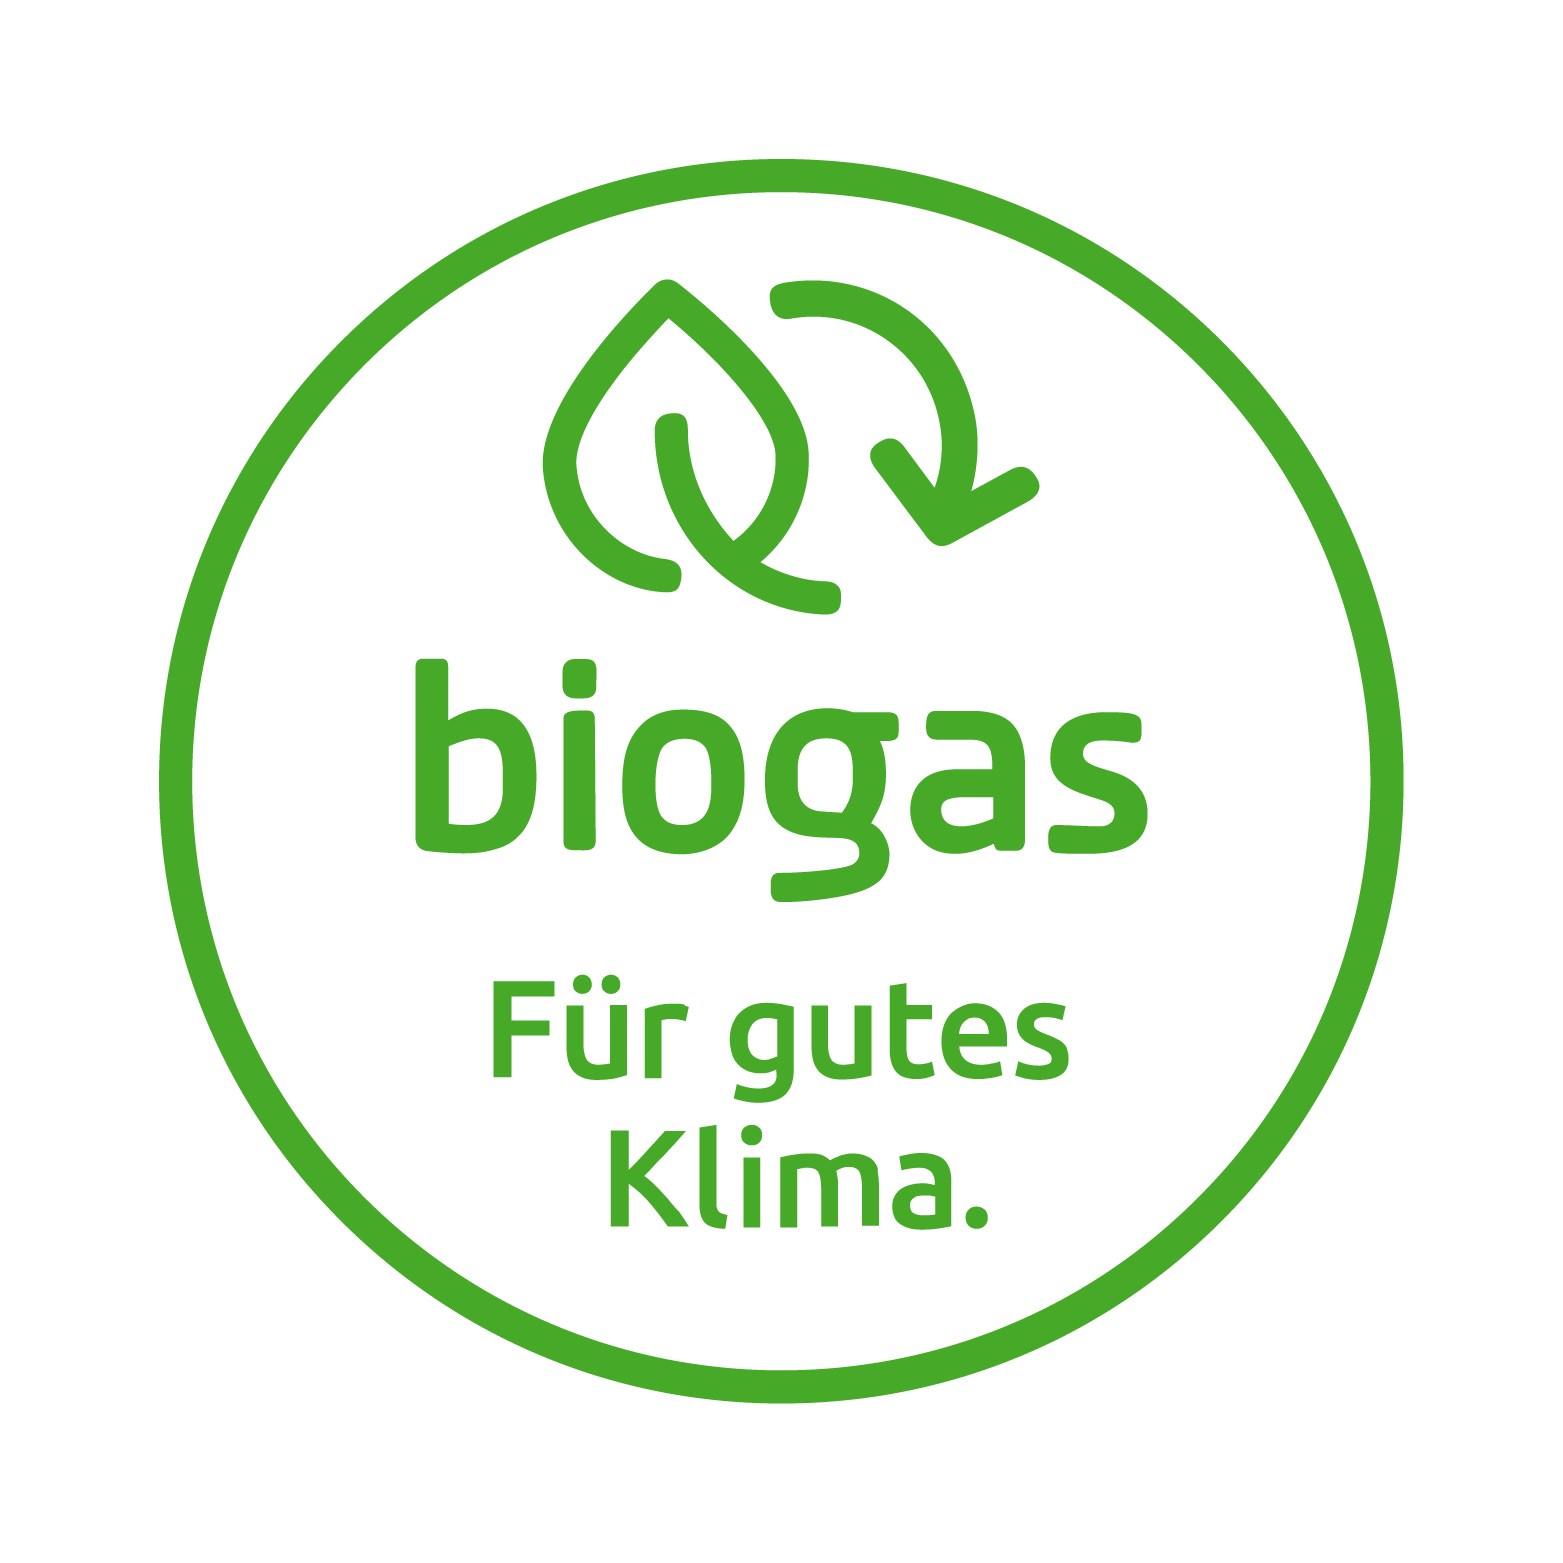 Das Siegel Biogas in Grün